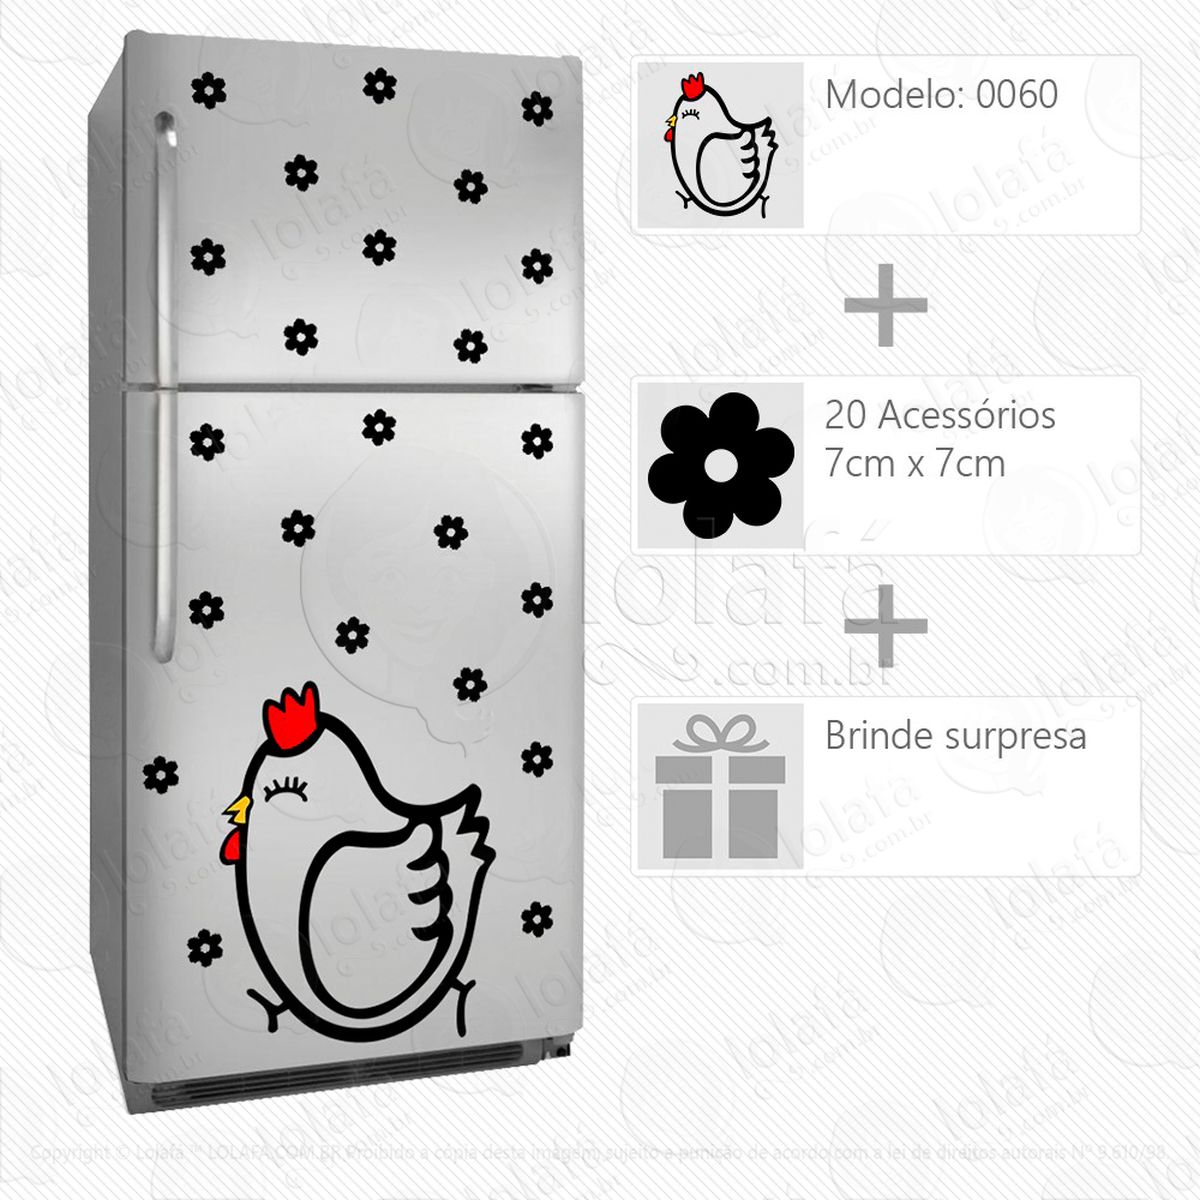 galinha adesivo para geladeira e frigobar - mod:60